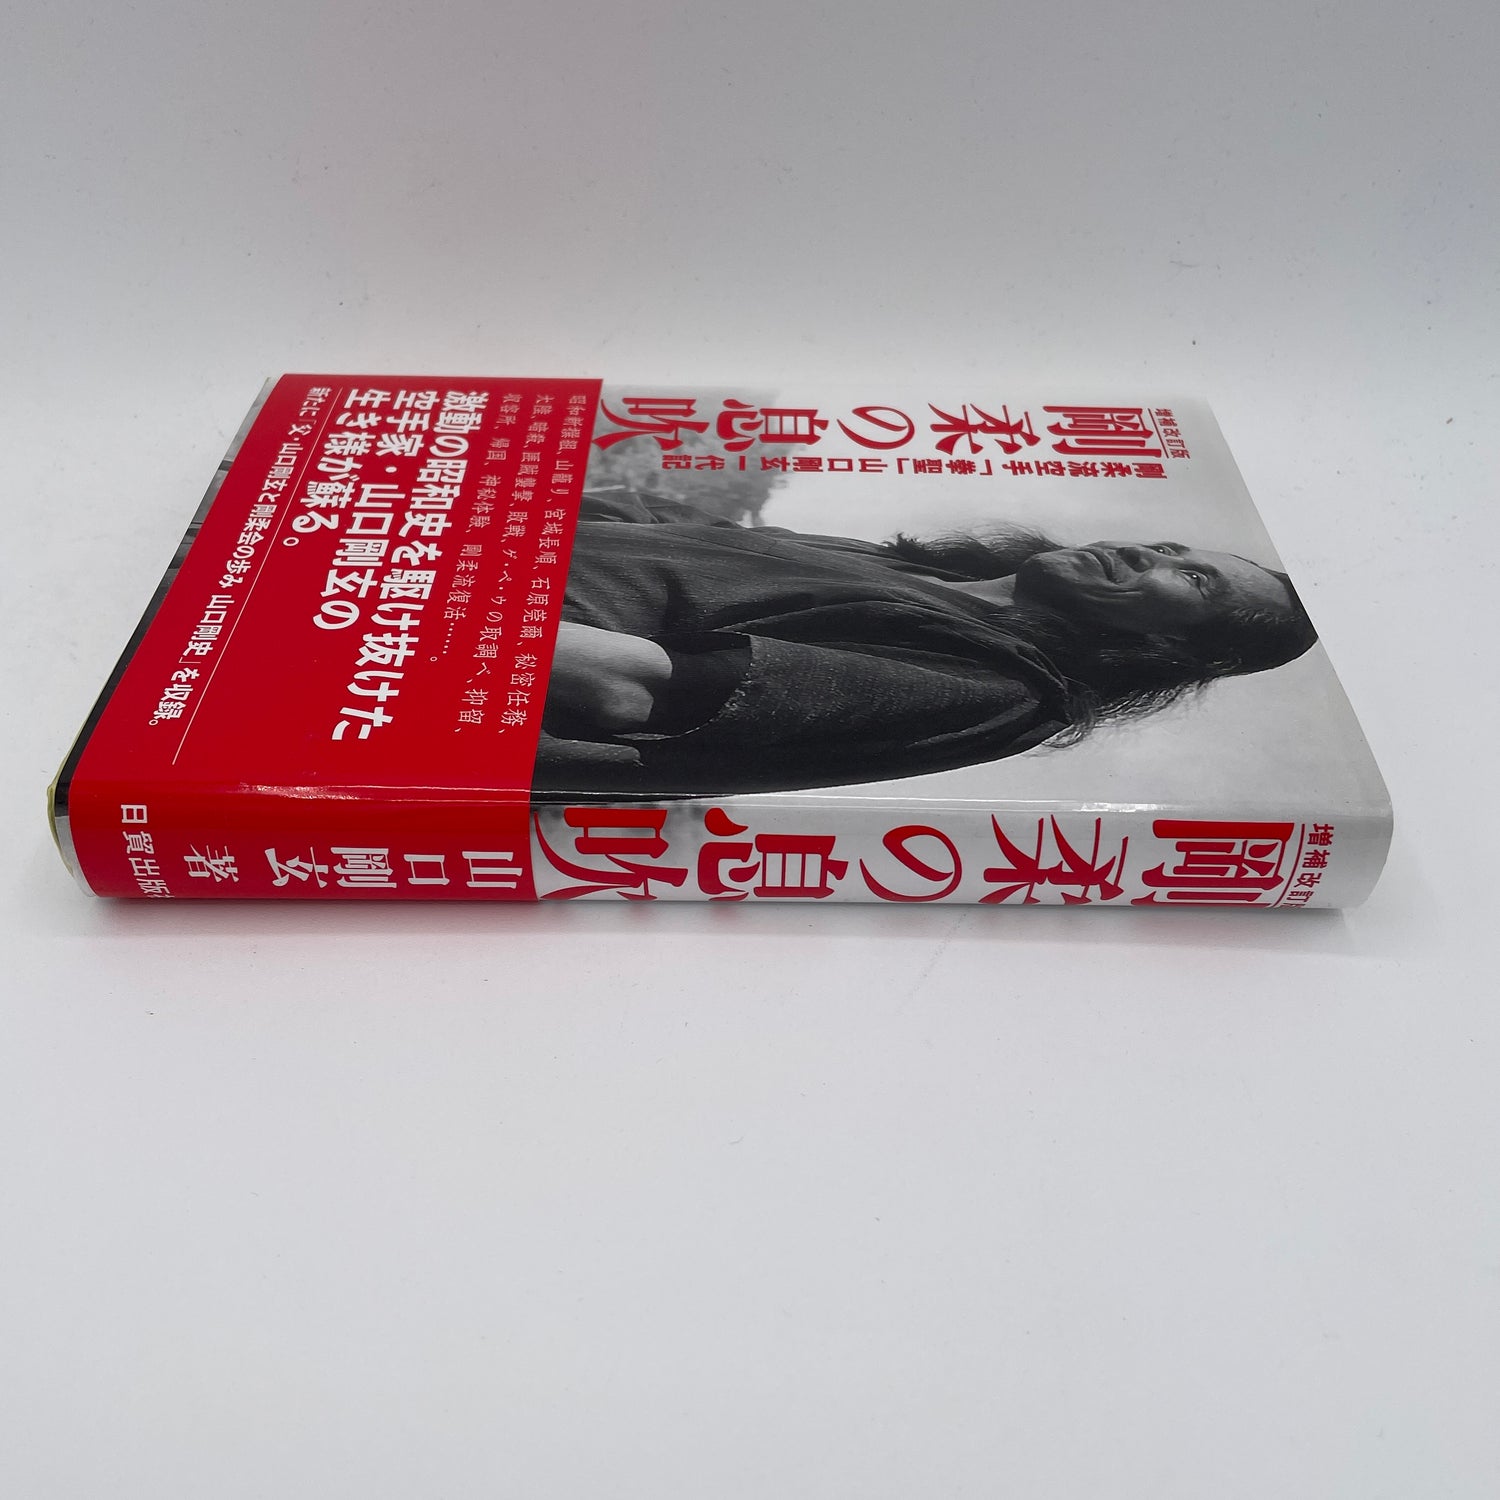 The Breath of Goju Ryu Karate (Revised) Book by Gogen Yamaguchi